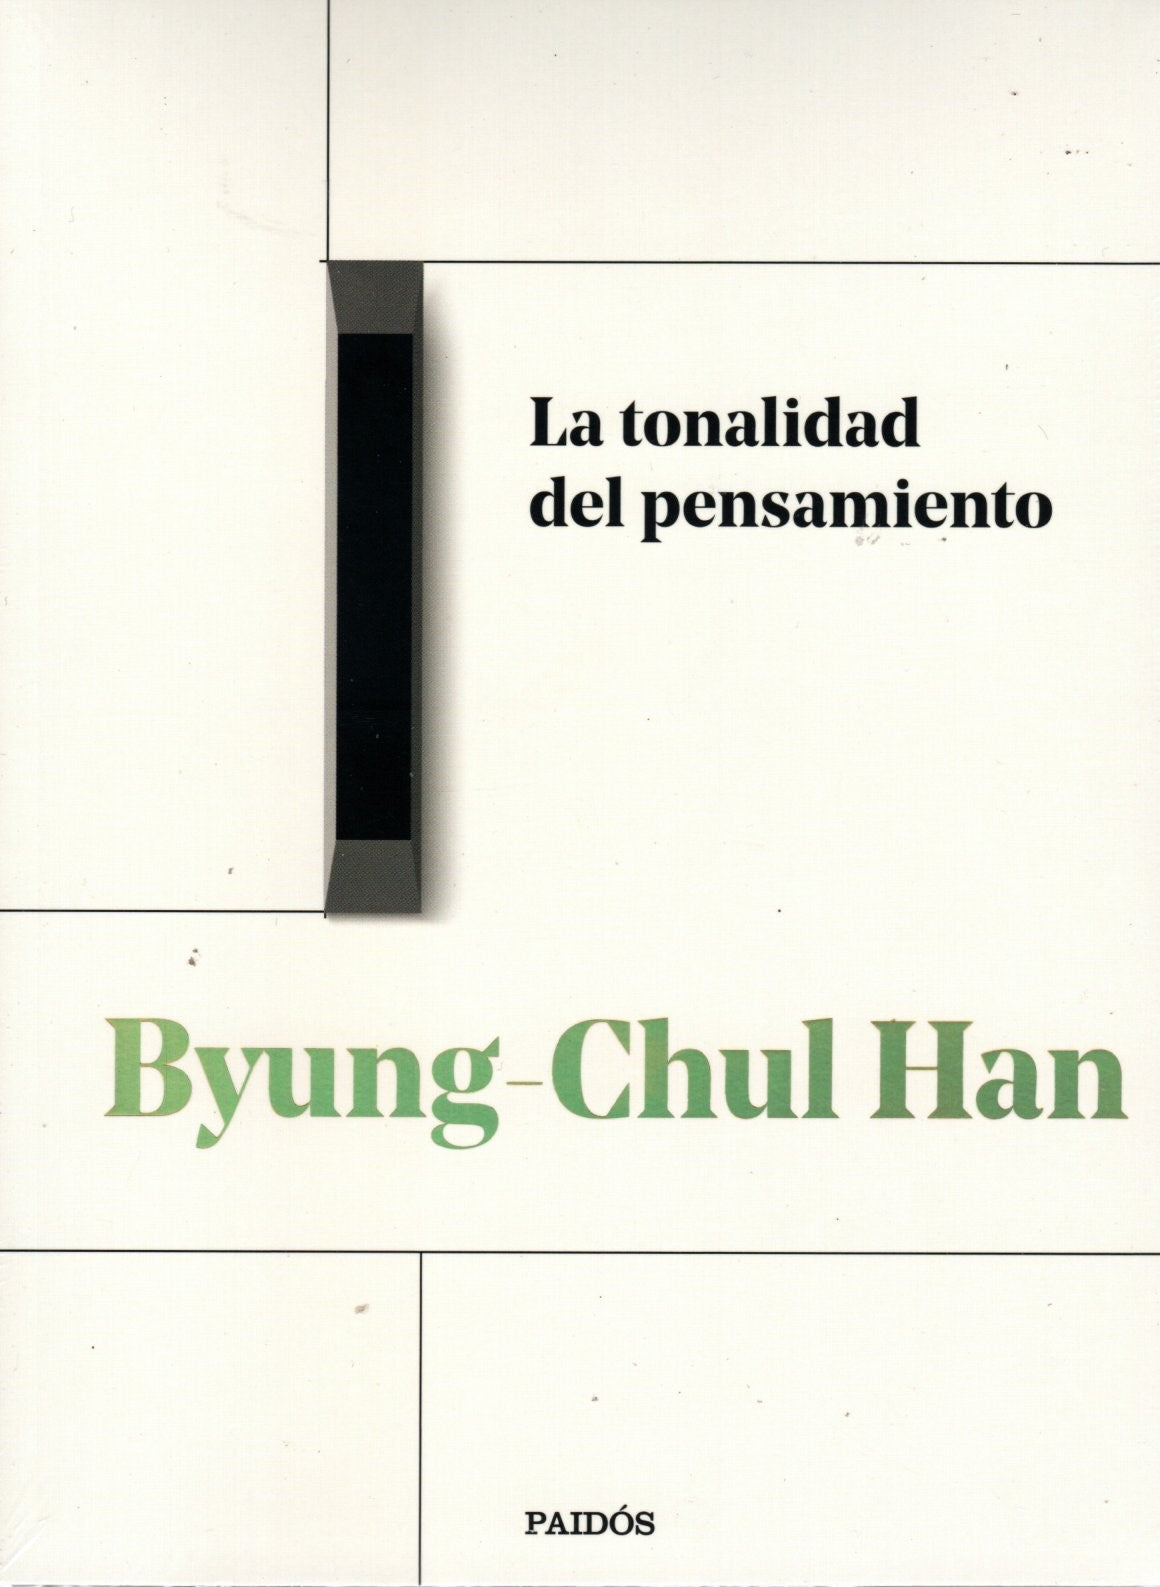 Libro Byung-Chul Han - La tonalidad del pensamiento